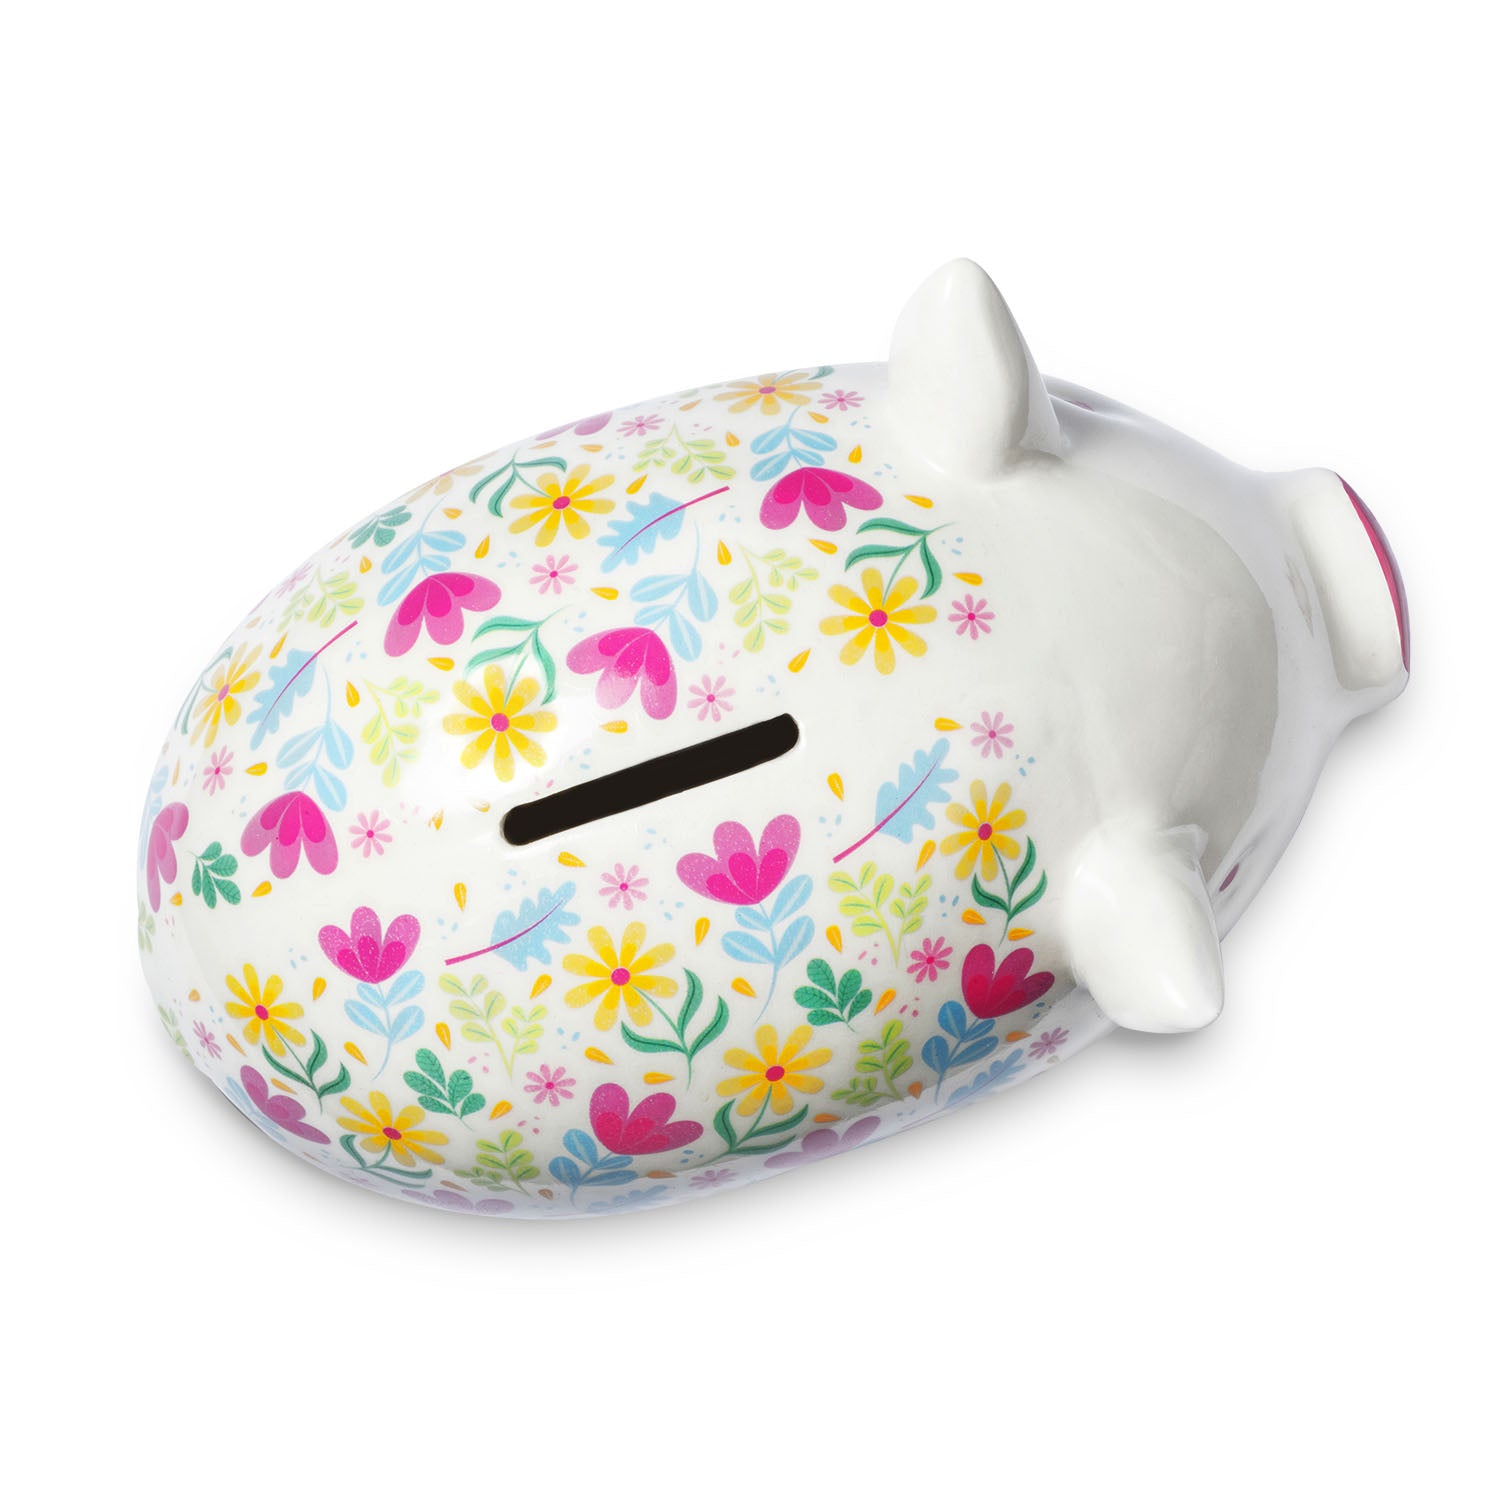 Tilly Pig - Flower Power Piggy Bank